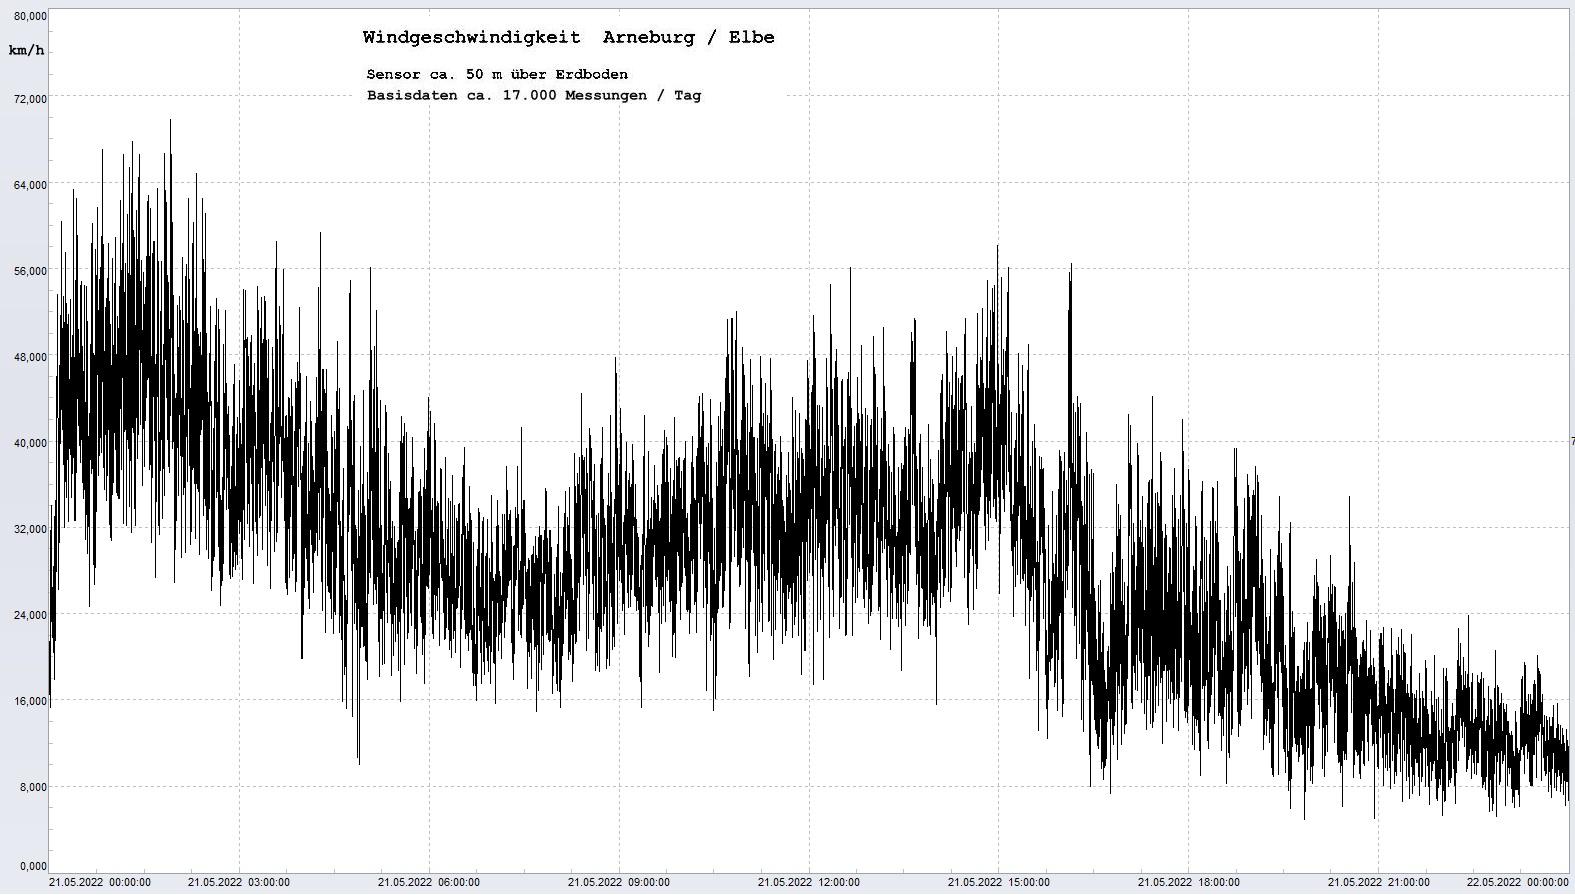 Arneburg Tages-Diagramm Winddaten, 21.05.2022
  Diagramm, Sensor auf Gebude, ca. 50 m ber Erdboden, Basis: 5s-Aufzeichnung